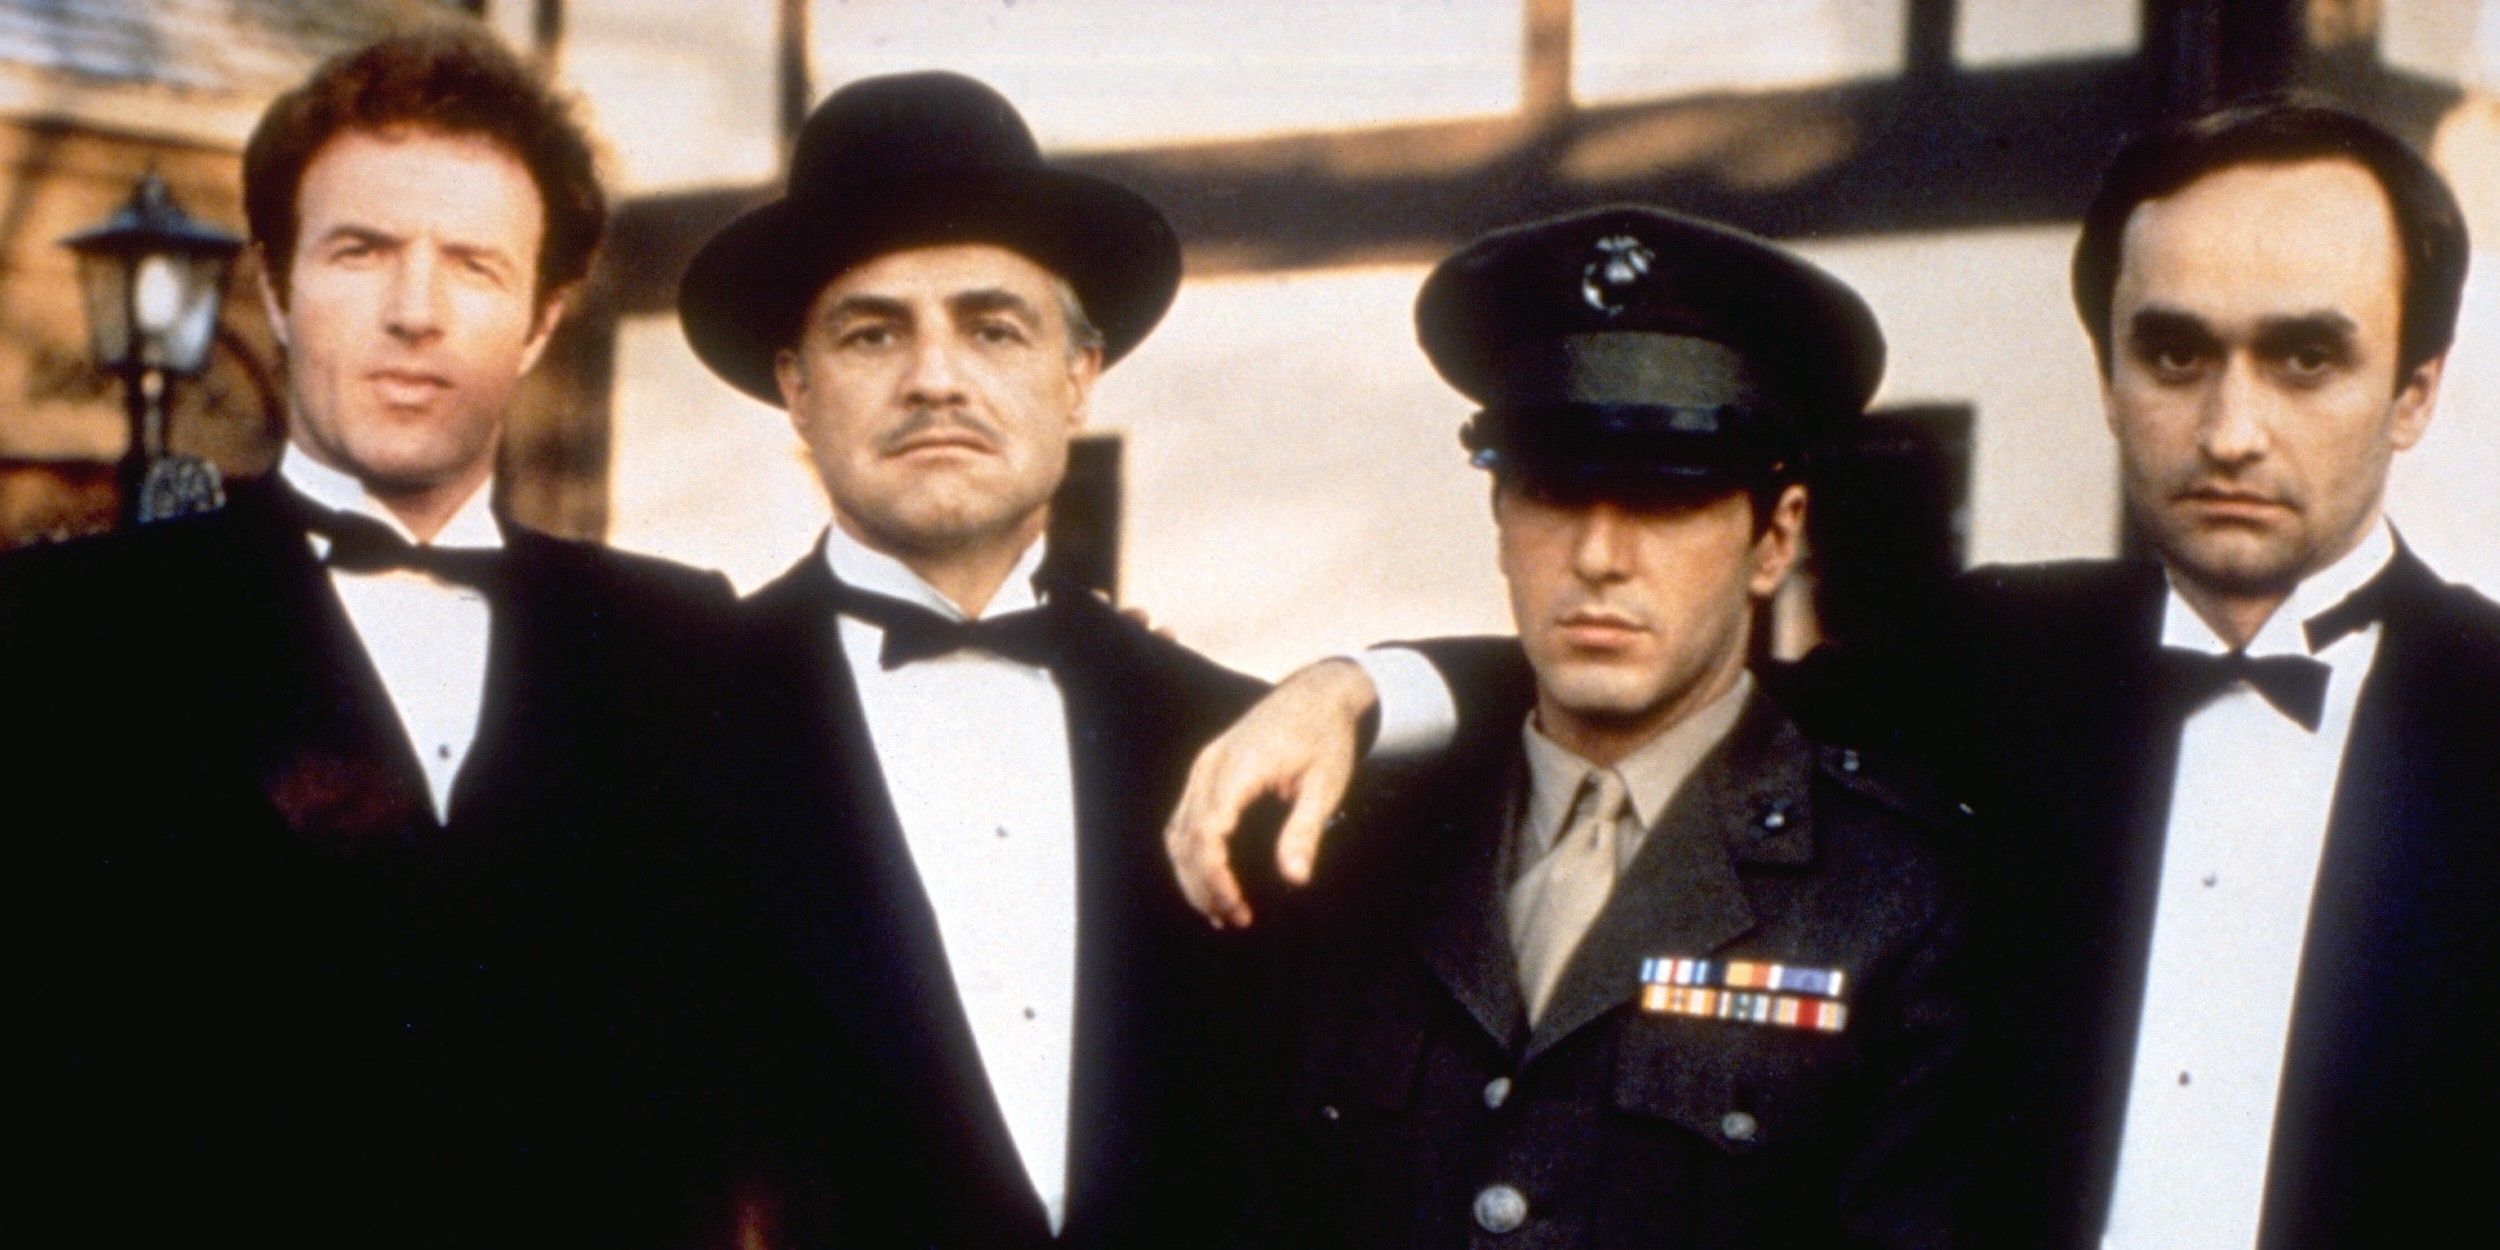 James Caan as Sonny, Marlon Brando as Don Vito Corleone, Al Pacino as Michael and John Cazale as Fredo in The Godfather